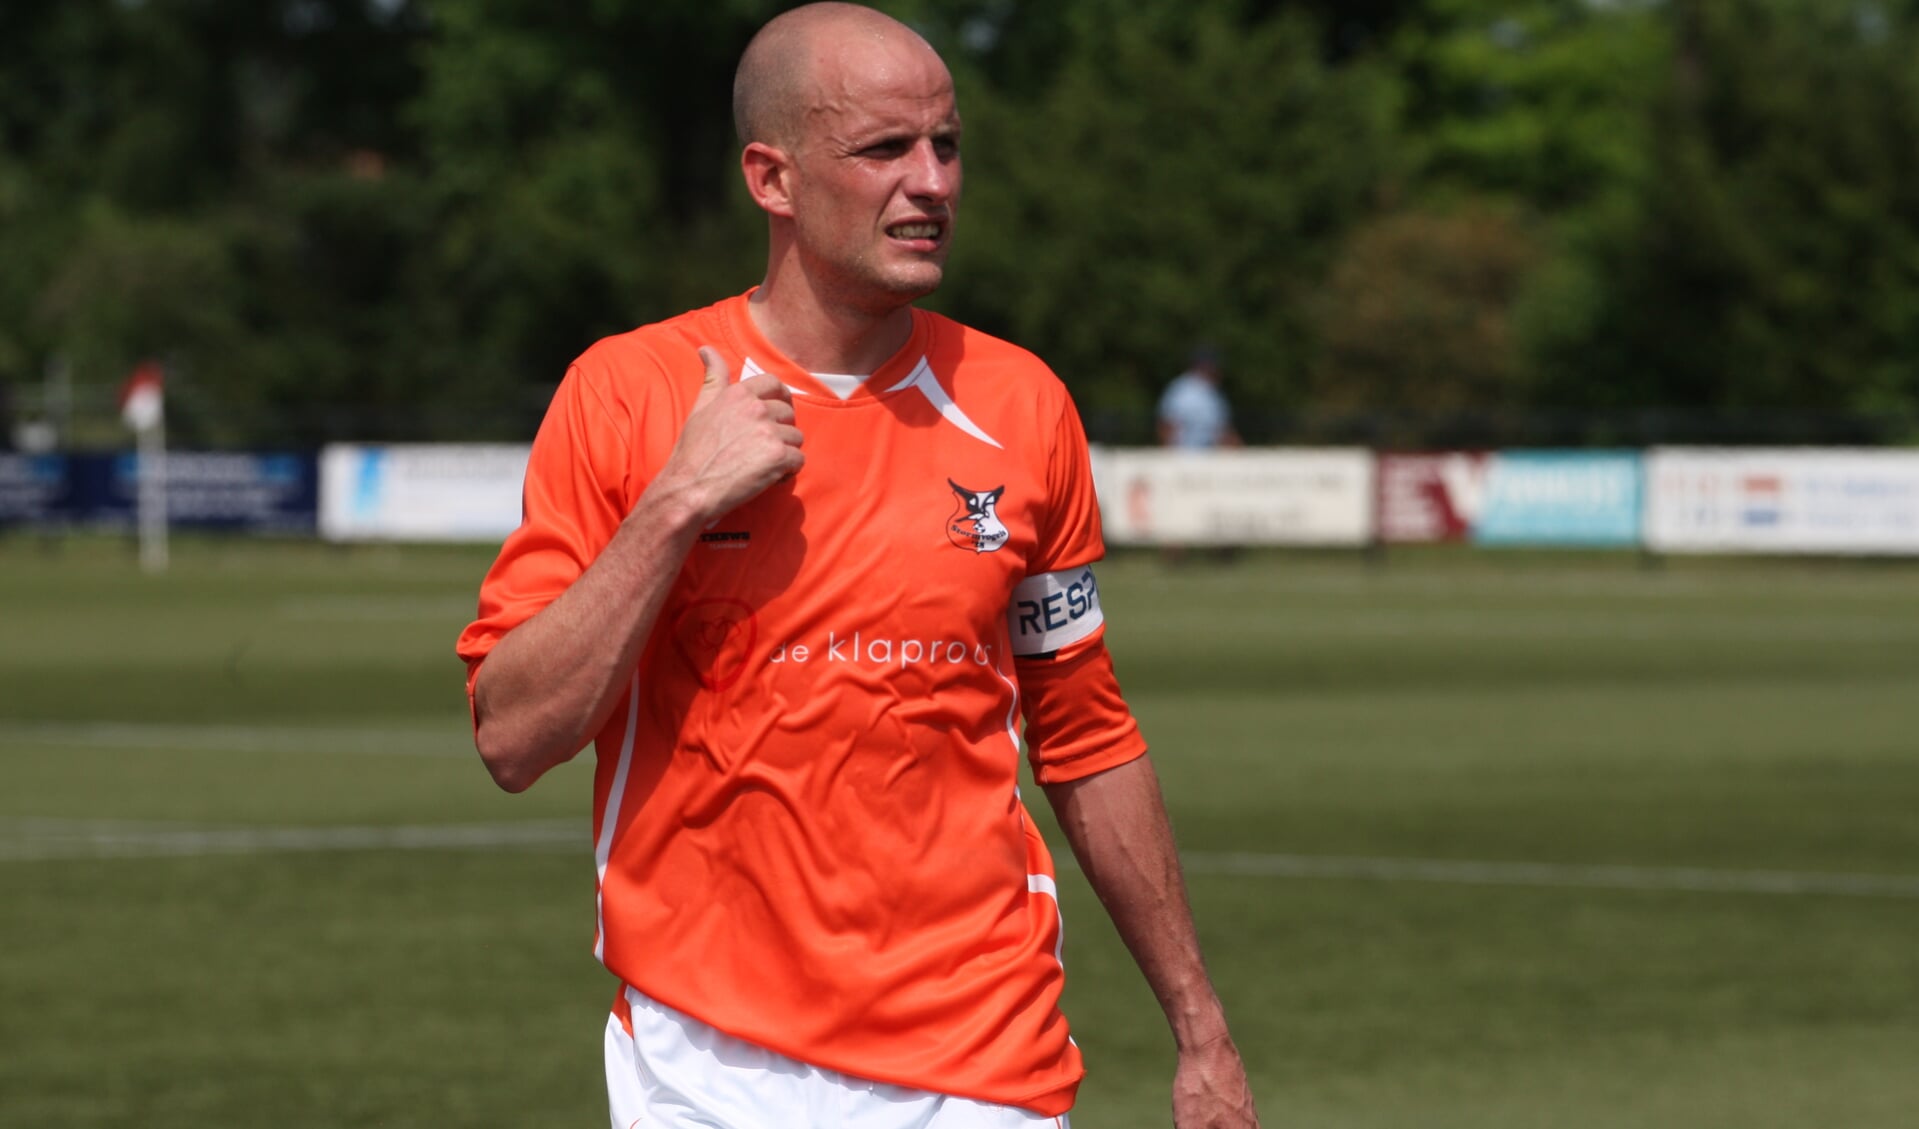 Aanvoerder Bart Seegers van Stormvogels scoorde de 2-0 voor zijn club (Foto: Peter Kuijpers)